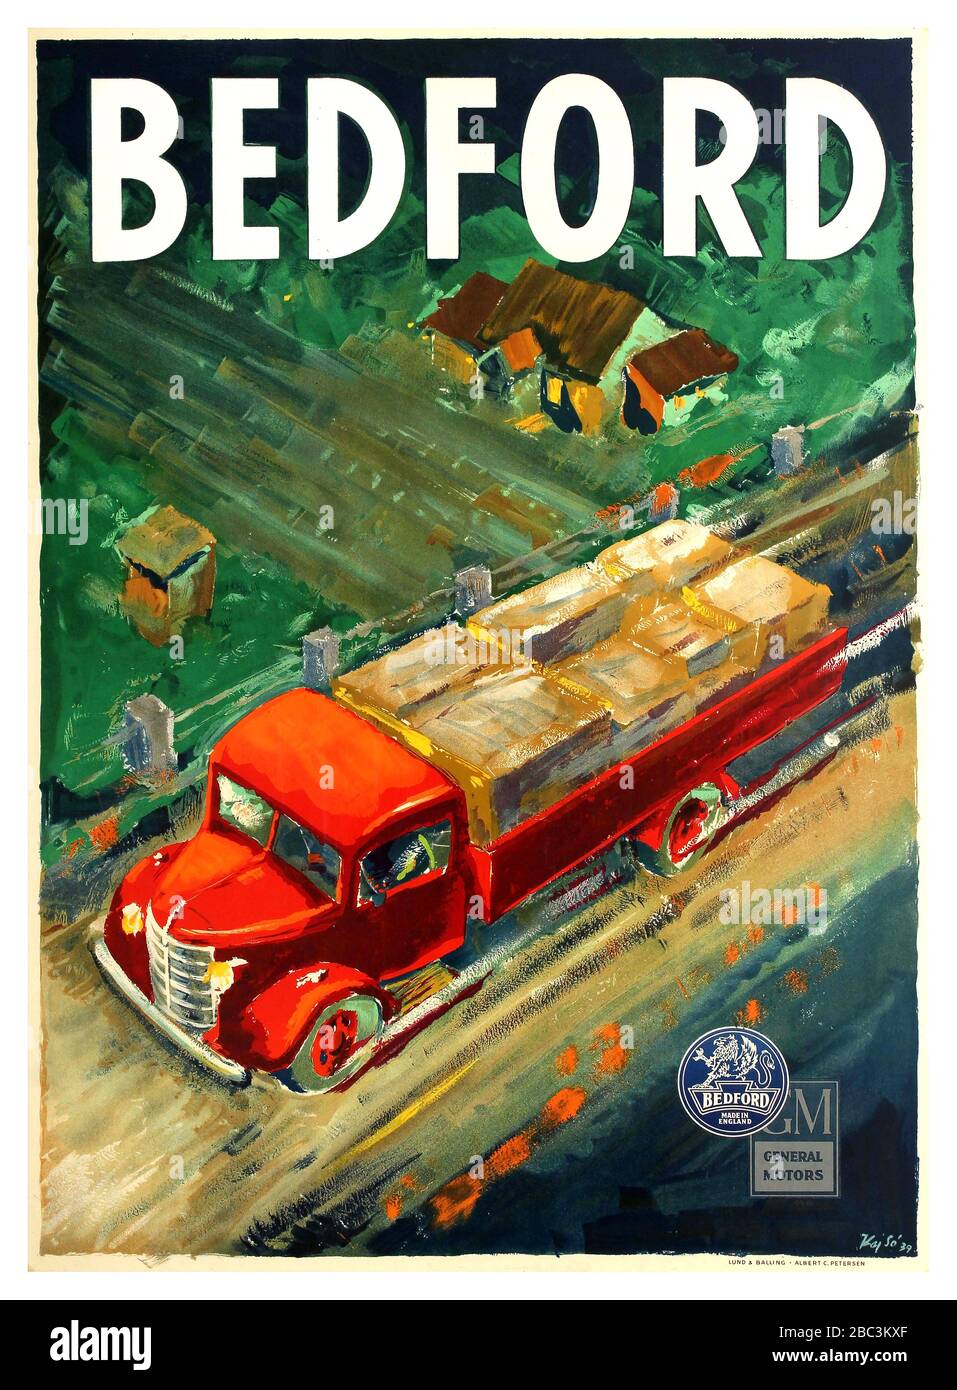 BEDFORD TRUCKS Vintage Werbeplakat für den britischen Lkw-Hersteller Bedford mit Luftbild eines geladenen roten Bedford-Trucks, der auf dem Land an einem Haus und einem Feld mit dem Text oben und den Logos von Bedford und General Motors unten vorbeifährt. Bedford Vehicles mit Sitz in Luton Bedfordshire wurde 1930 von Vauxhall Motors gegründet, um Nutzfahrzeuge, Lastwagen und Lieferwagen herzustellen; das Unternehmen wurde 1925 von dem amerikanischen Unternehmen General Motors übernommen. Gedruckt von Lund & Balling - Albert C. Petersen. . Dänemark, 1939, Designer: Kaj so, Stockfoto